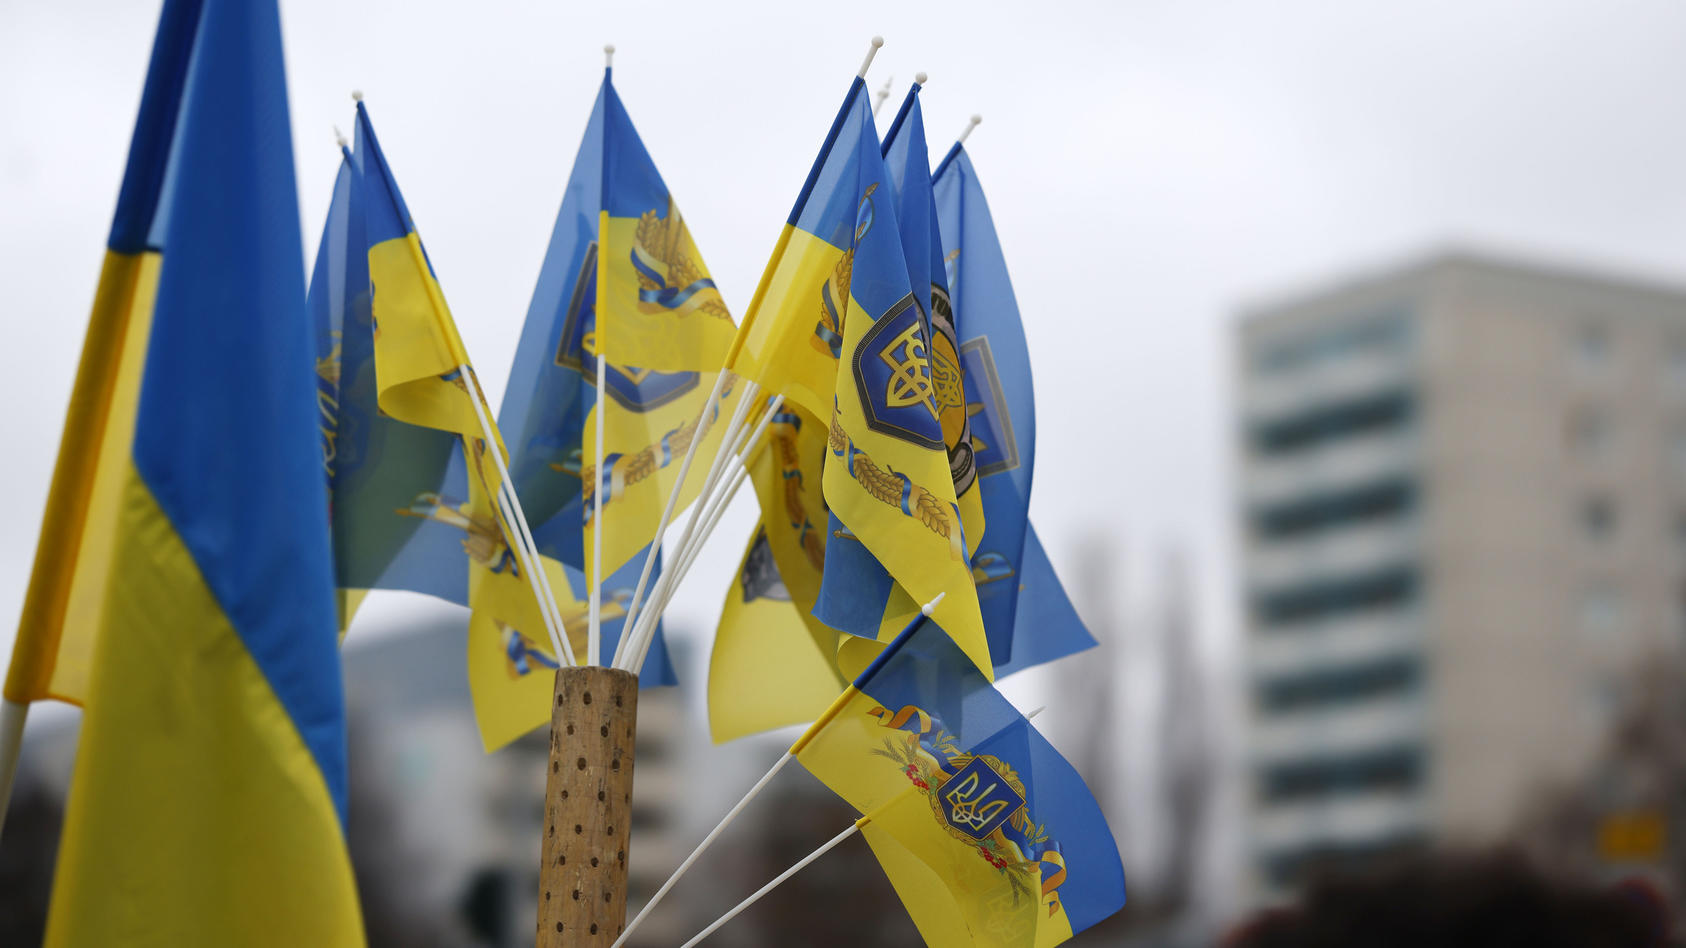 Wer mit einer gelb-blauen Fahne in Russland auf die Straße geht, riskiert direkt verhaftet zu werden. Doch auch eine Jacke in diesen Fahnen kann schon ein Grund sein, von der Polizei mitgenommen zu werden.